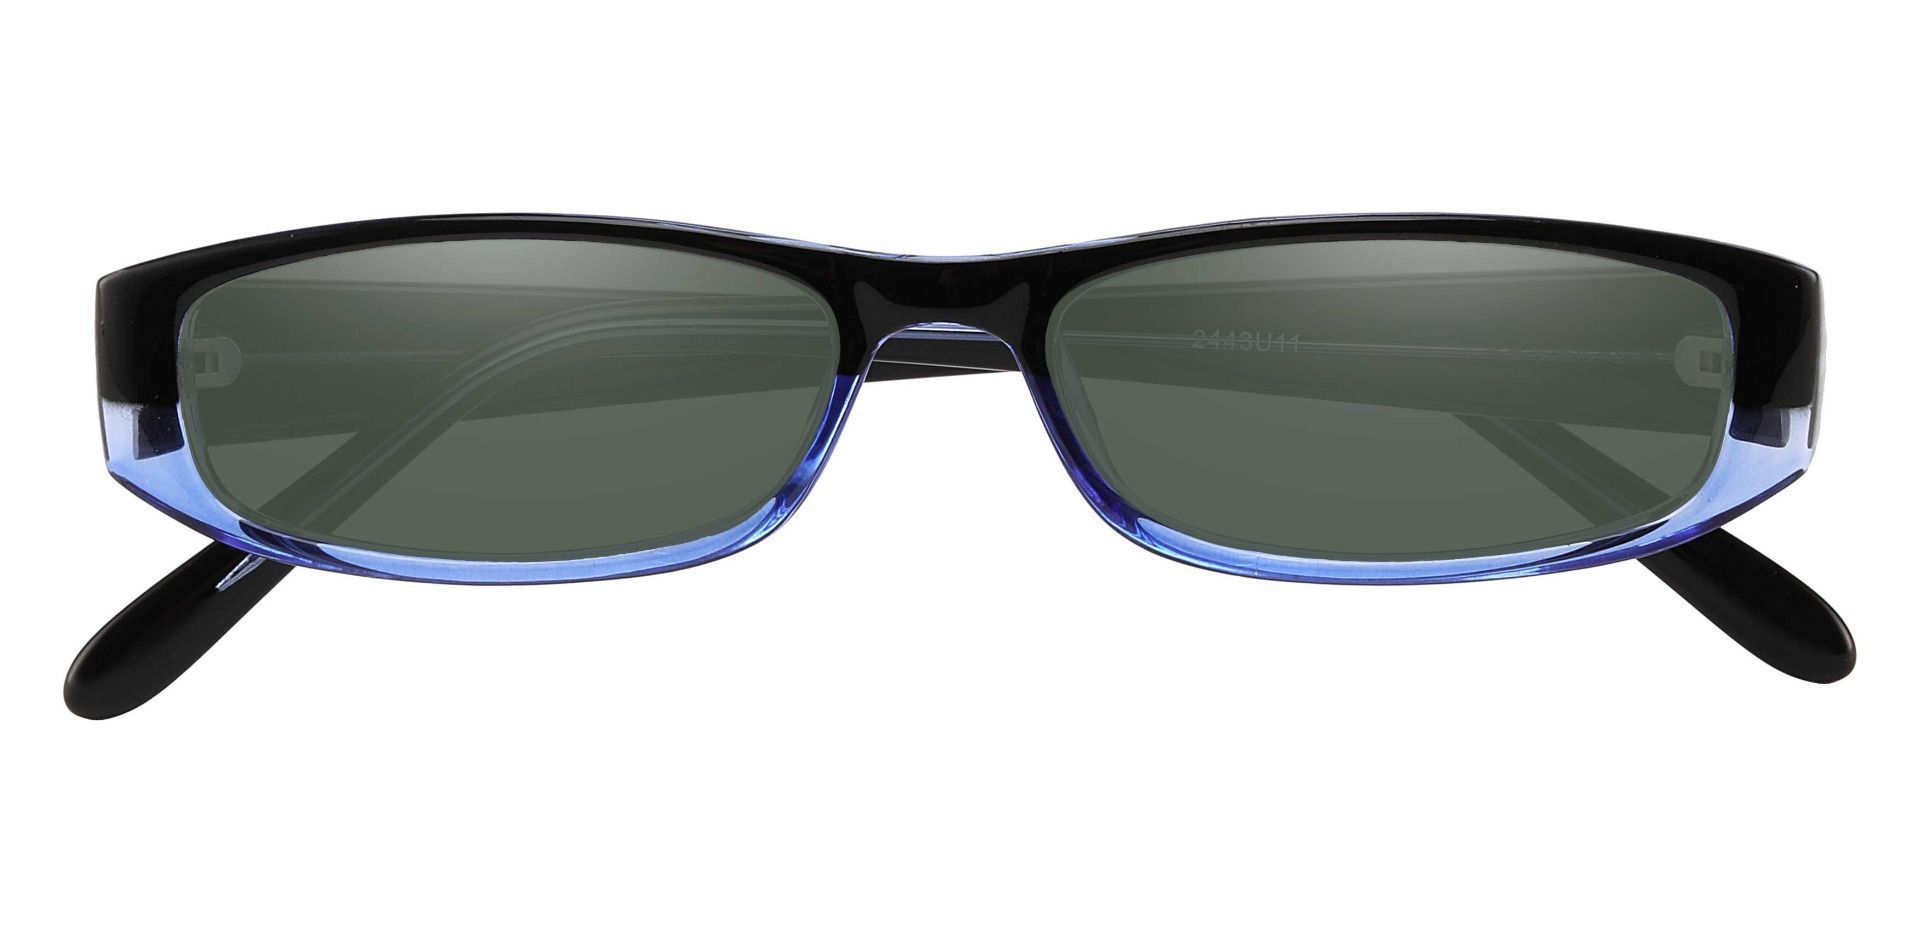 Elgin Rectangle Reading Sunglasses - Blue Frame With Green Lenses